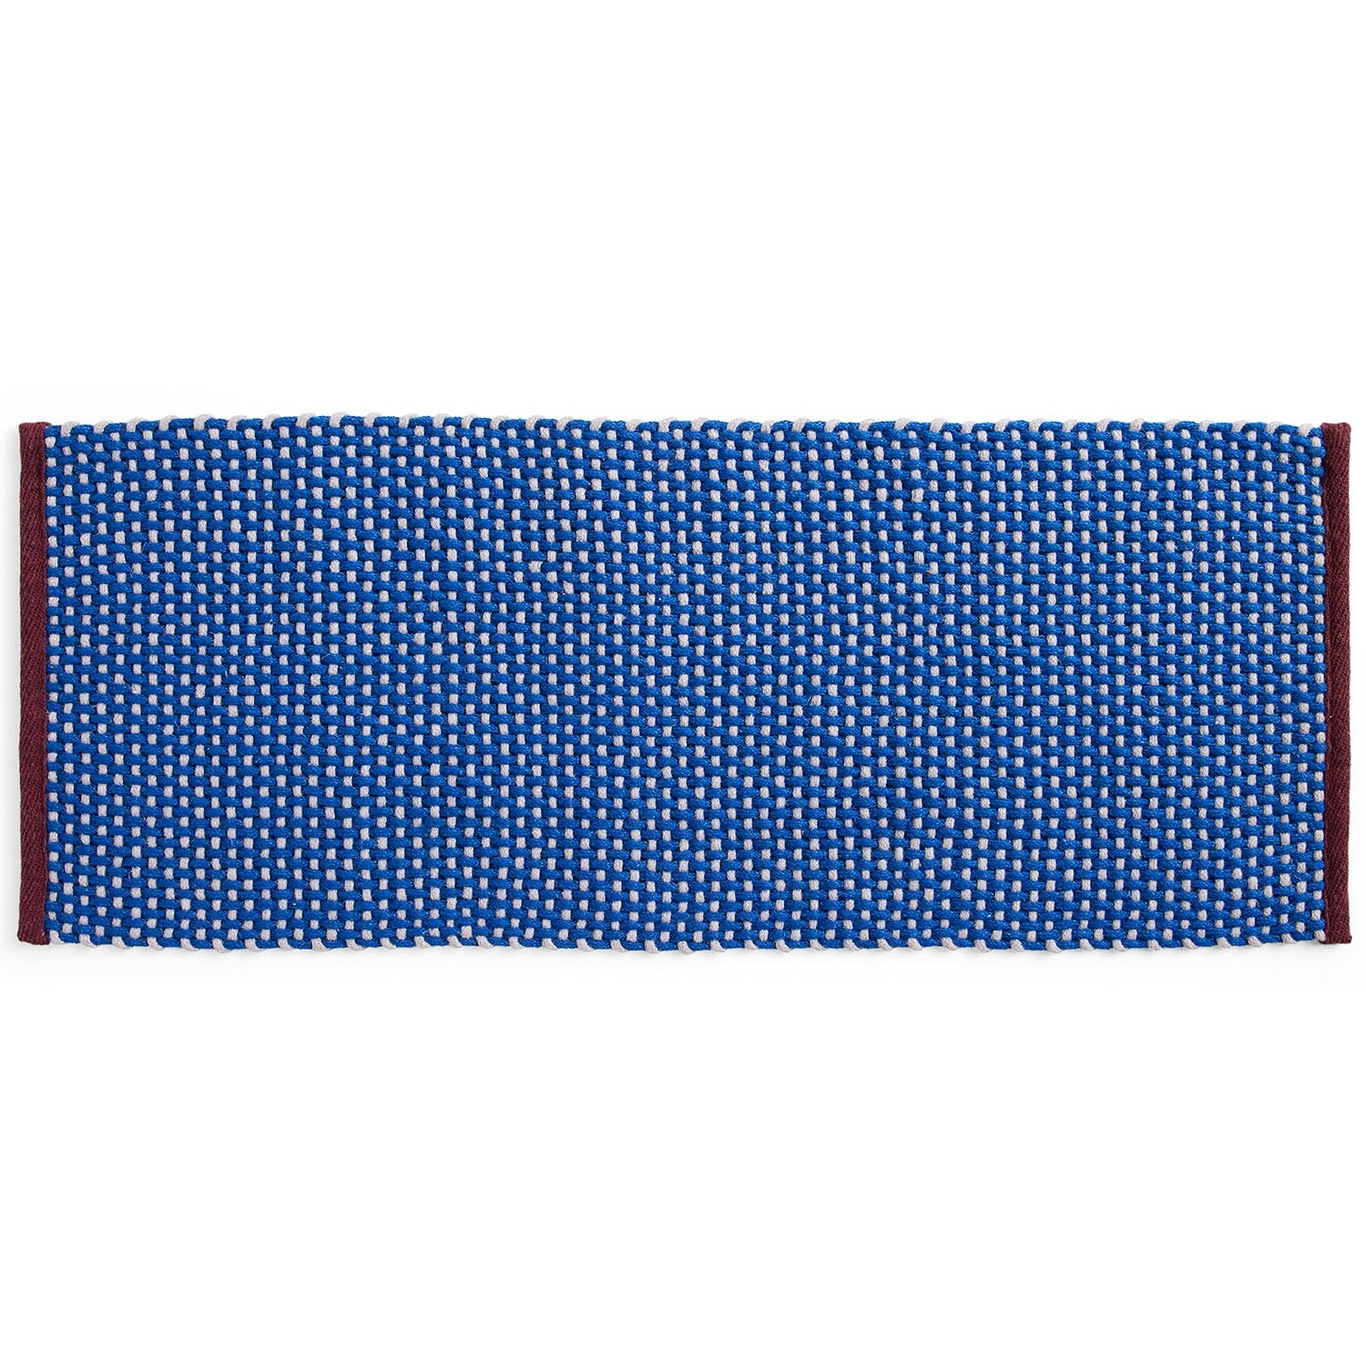 Ovimatto Pitkä 50x125 cm, Royal Blue